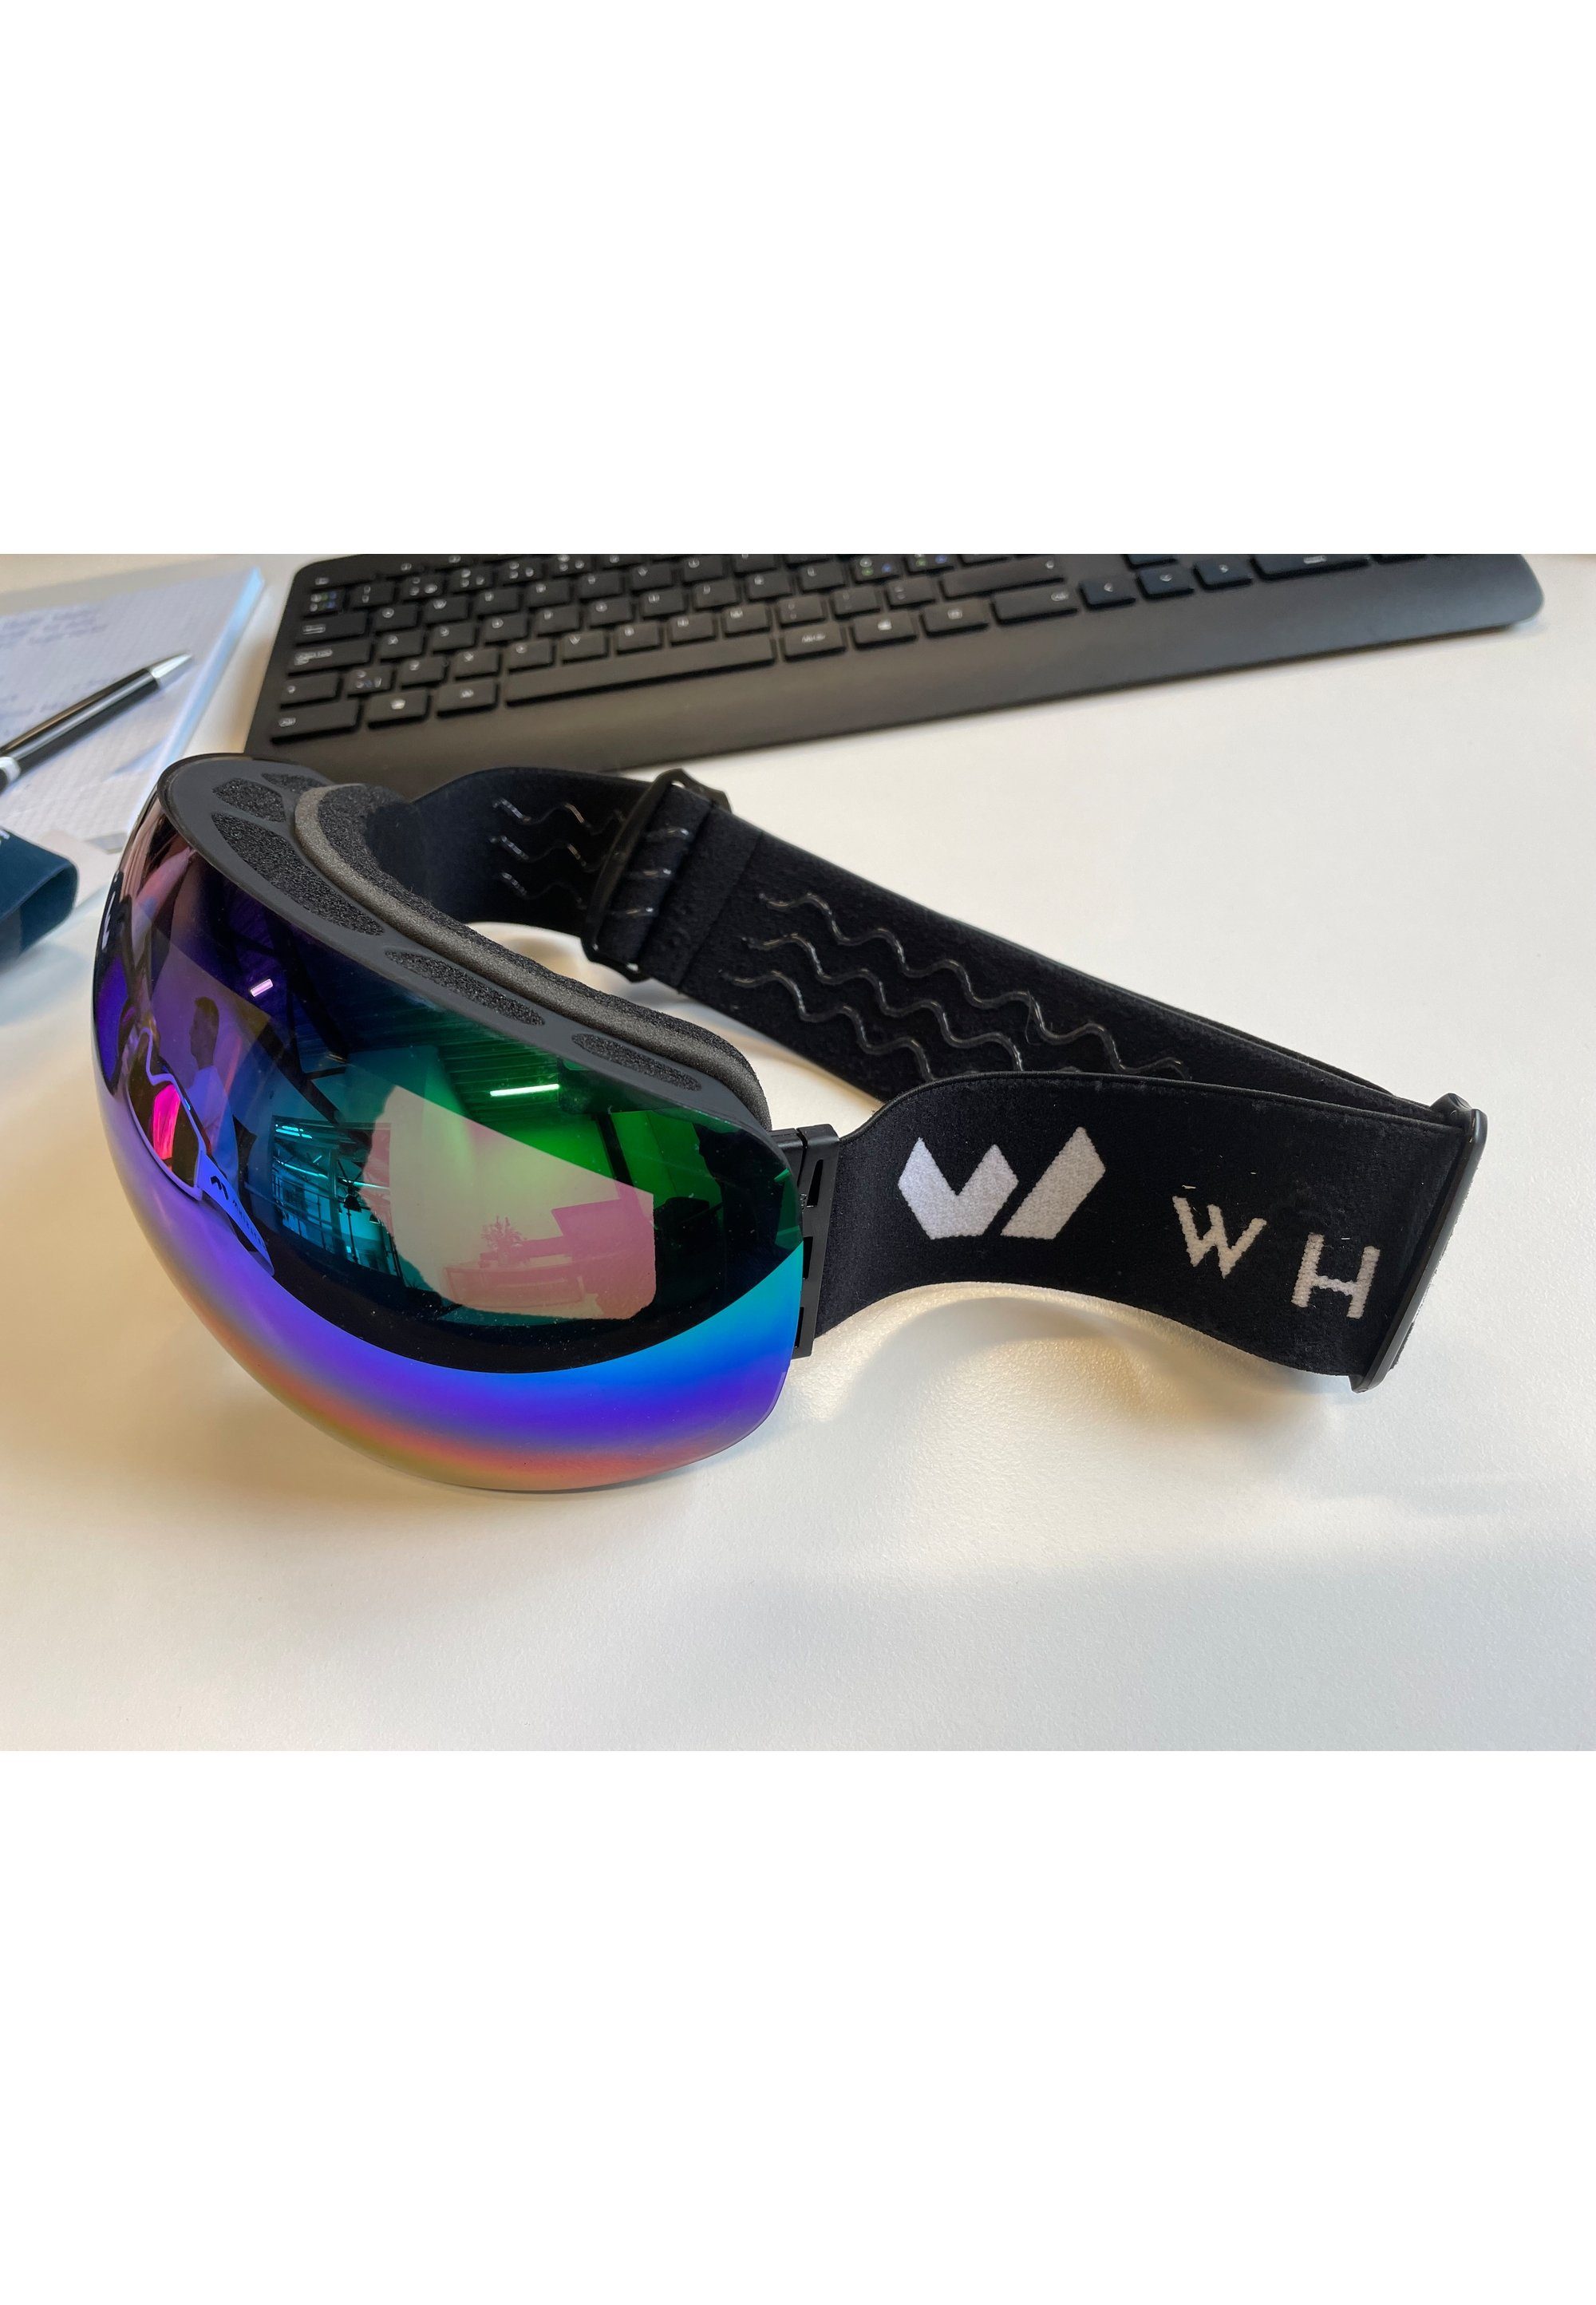 WHISTLER Skibrille WS6100, mit praktischer schwarz-blau Anti-Fog-Beschichtung